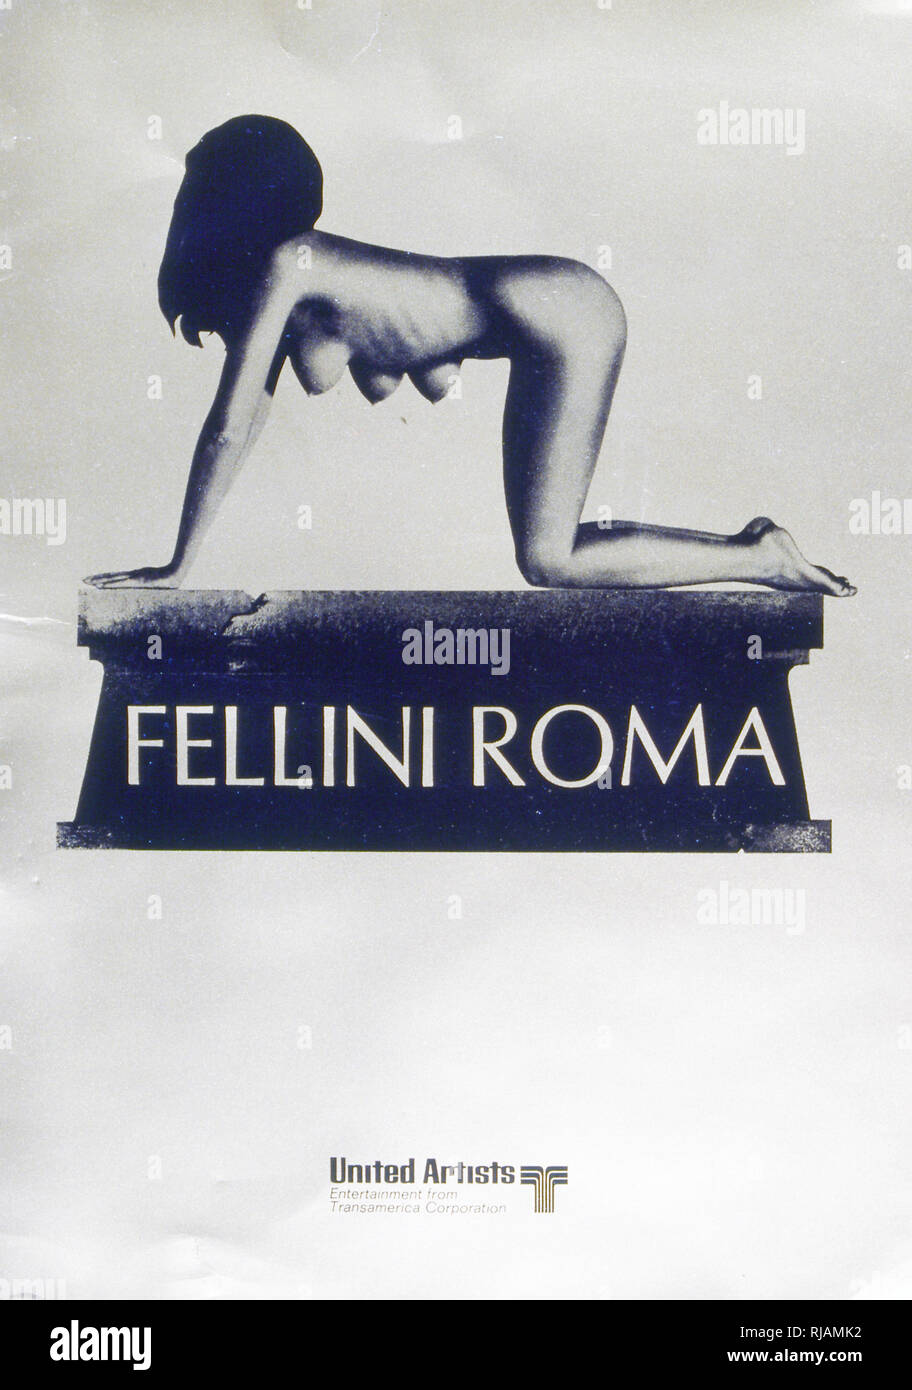 Film 1972 Posta pour "Roma" de Fellini. Un semi-autobiographique, poétique comédie dramatique film dépeignant Federico Fellini directeur de passer de sa ville natale de Rimini à Rome dans sa jeunesse. C'est un hommage à la ville, illustré dans une série d'épisodes plus ou moins liées à la fois au cours d'hier et d'aujourd'hui Rome. Federico Fellini (1920 - 1993) était un réalisateur et scénariste italien. Banque D'Images